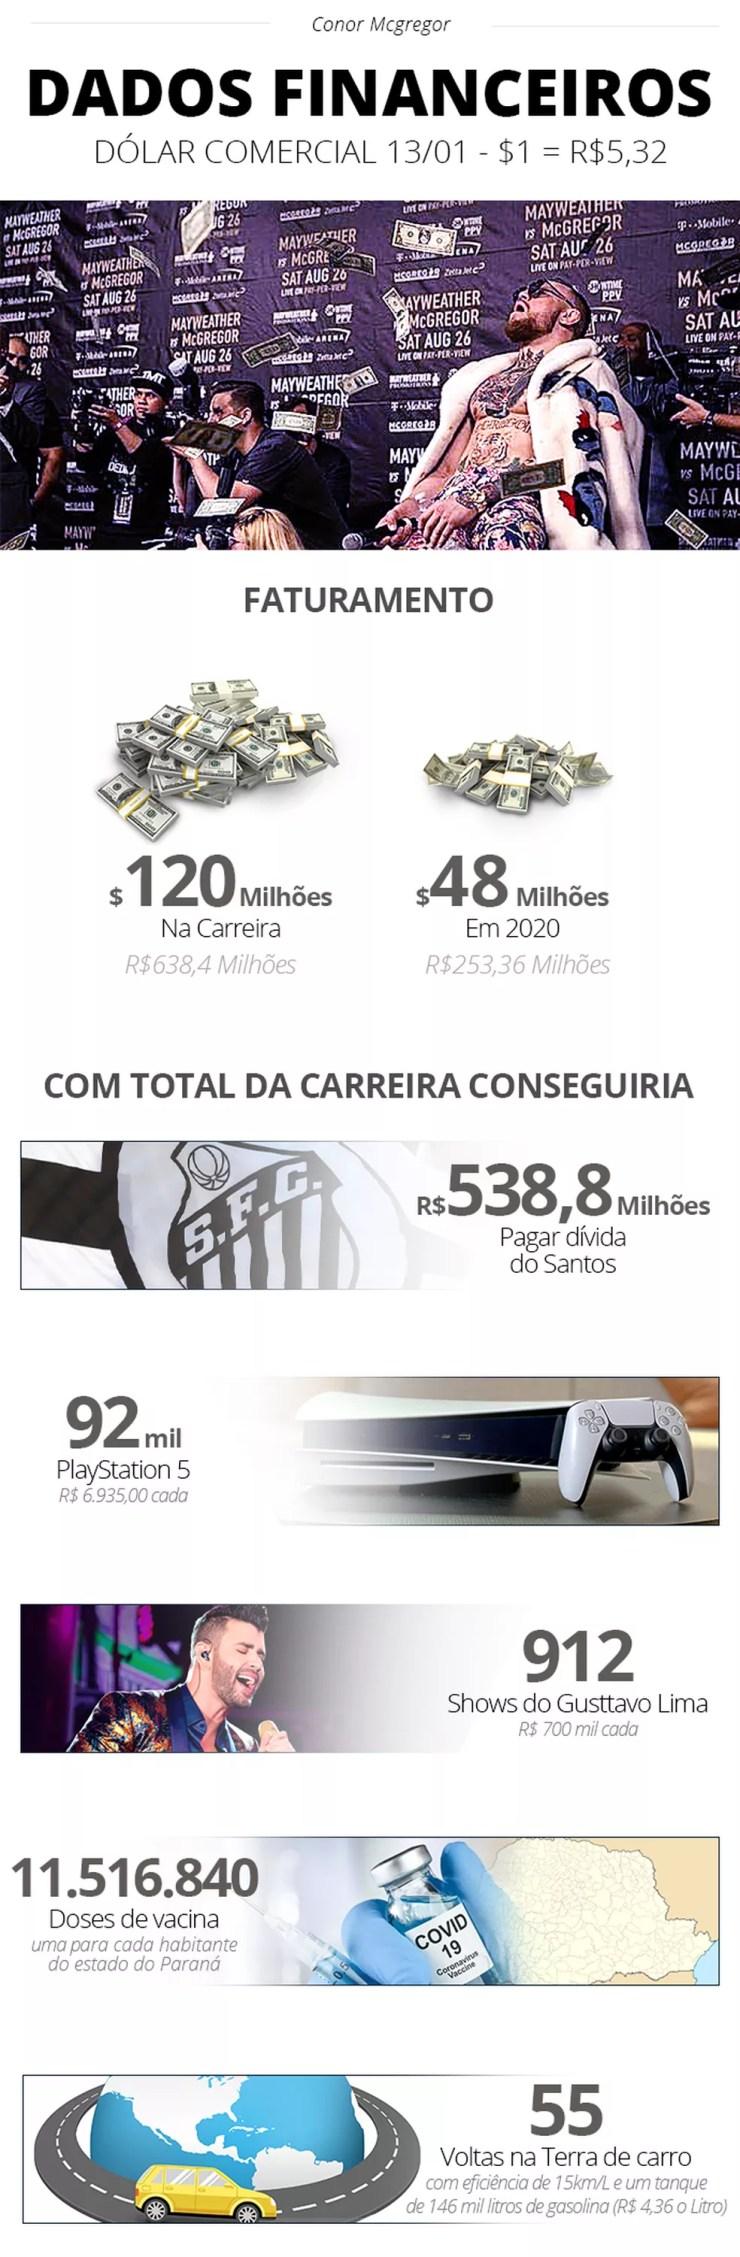 Dinheiro para pagar dívida do Santos e mais seguidores que o Flamengo: o tamanho de Conor McGregor